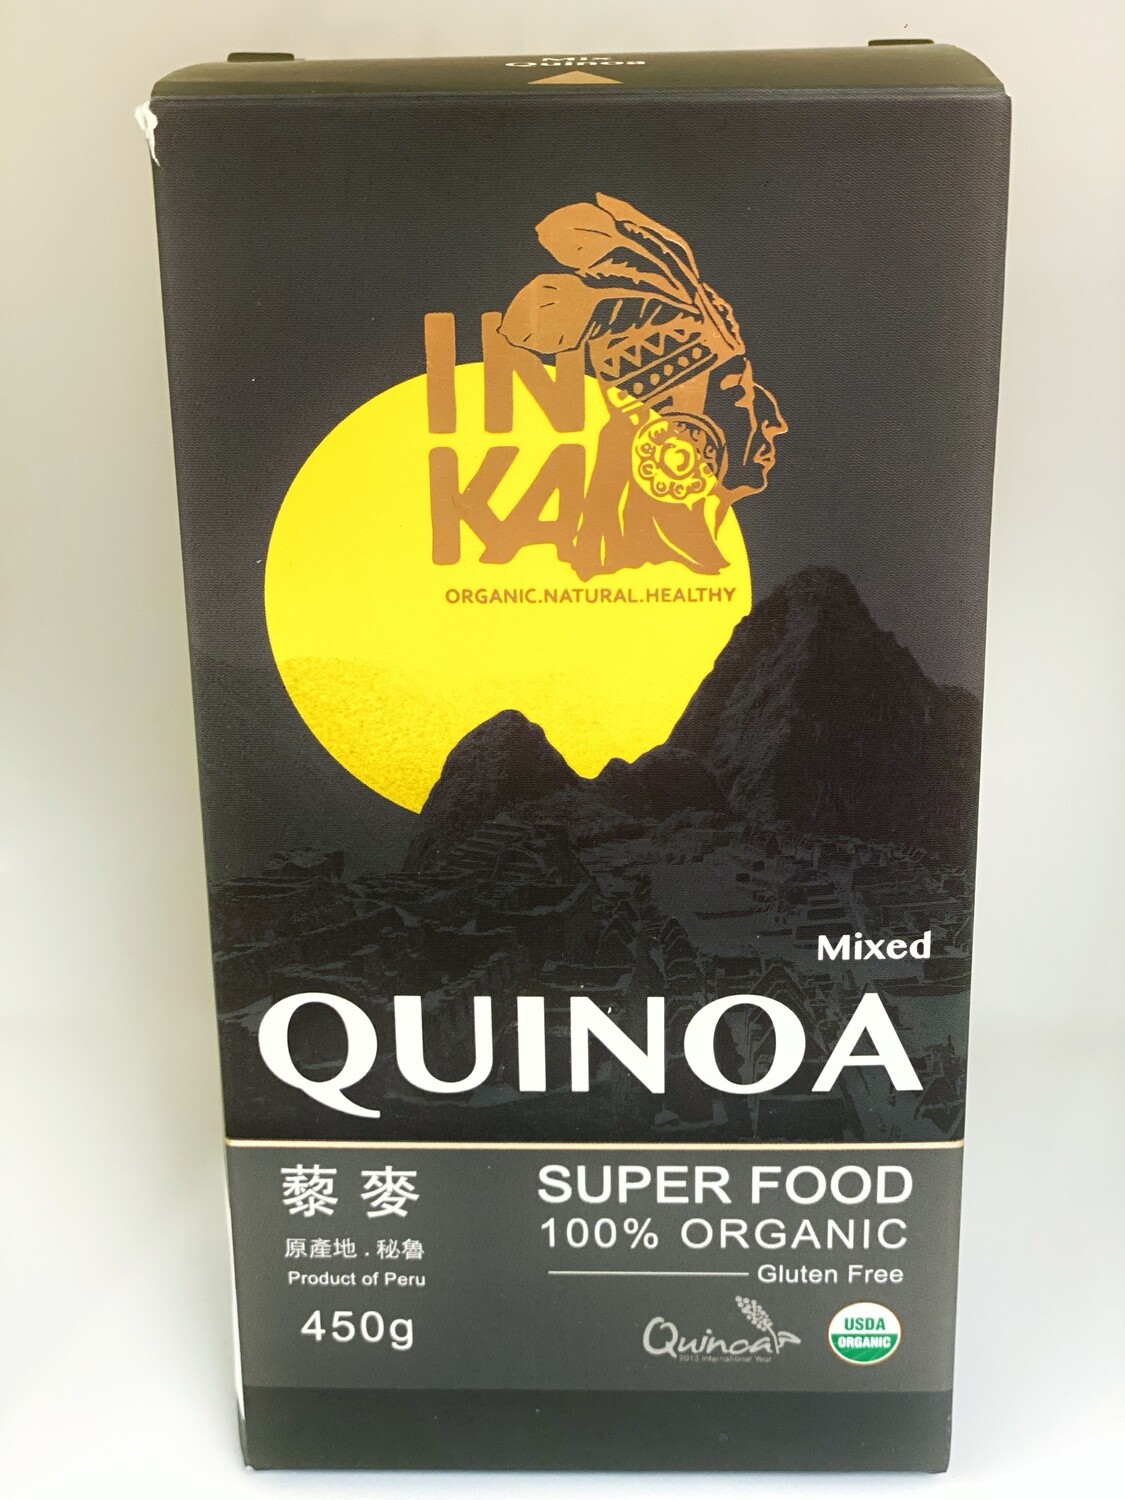 Quinoa Mixed - 100% Organic - Product of Peru - 450gms